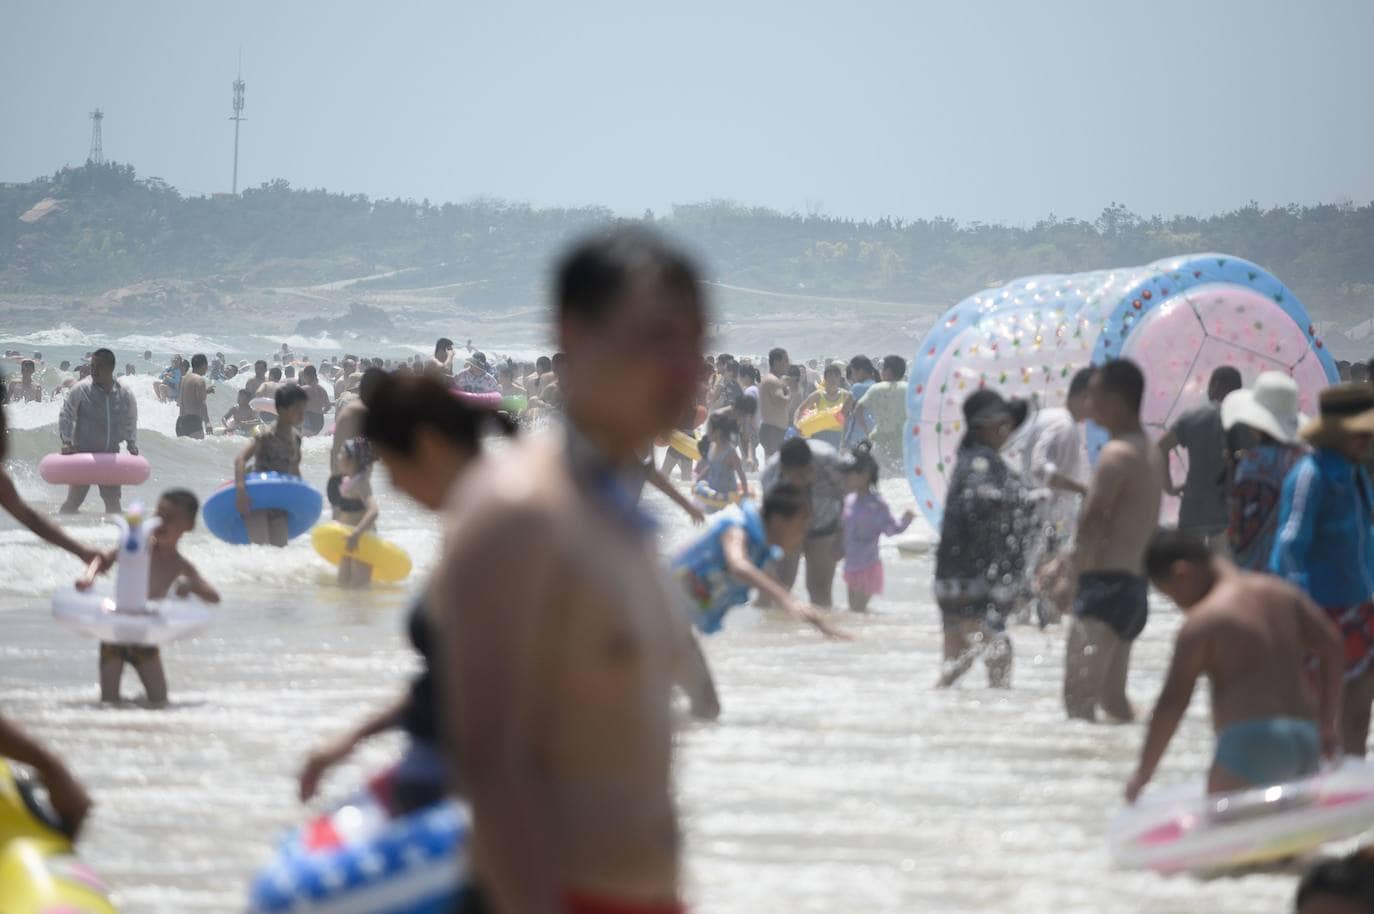 La playa de Qingdao en la provincia de Shadong, es una de las playas más concurridas de China. Aquí, la gente, busca un lugar donde refrescarse del azotador calor